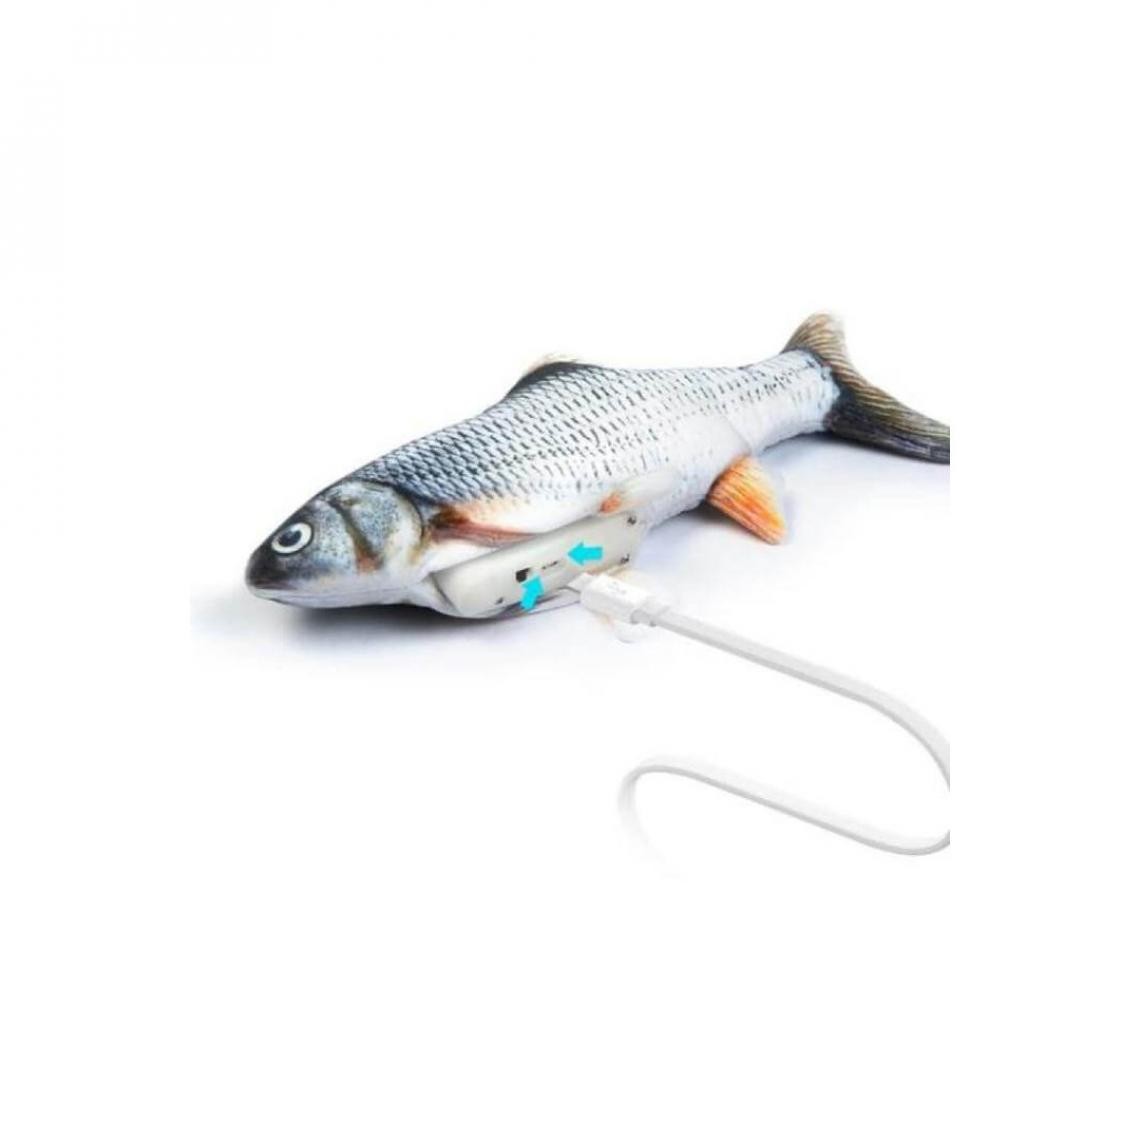 Venteo - MAGIC FISH - jeu pour chat - Adulte - Gris - rechargeable câble USB - Educatif - Jouet pour chat